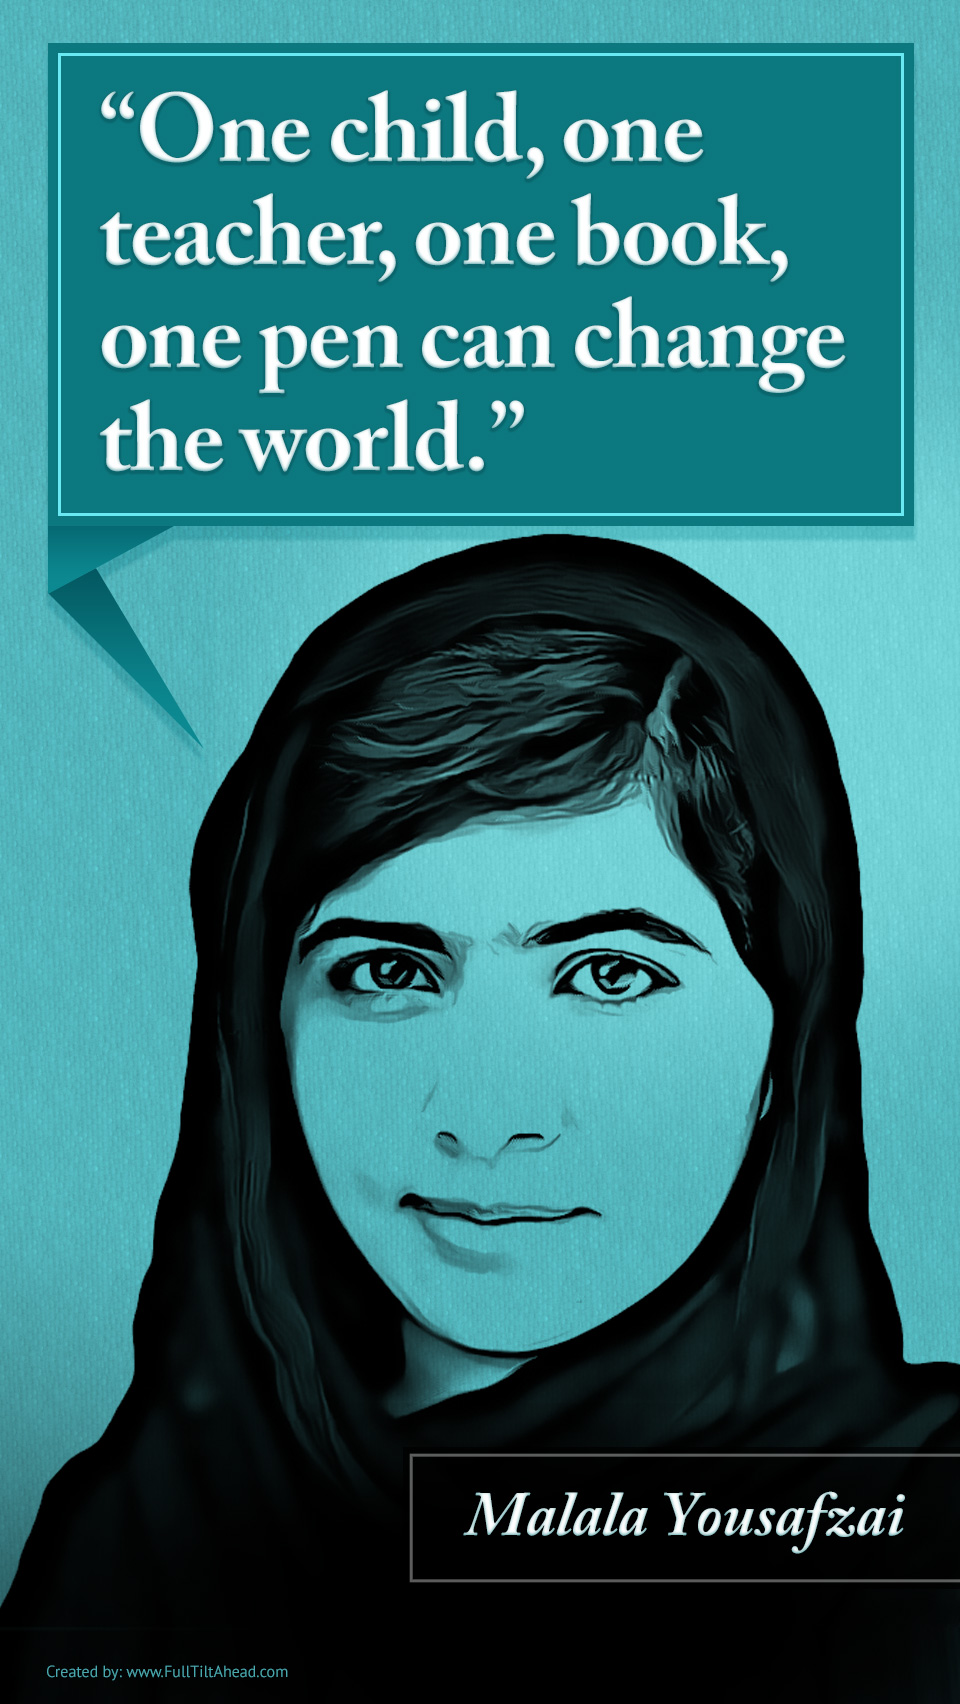 Malala Yousafzai Change The World